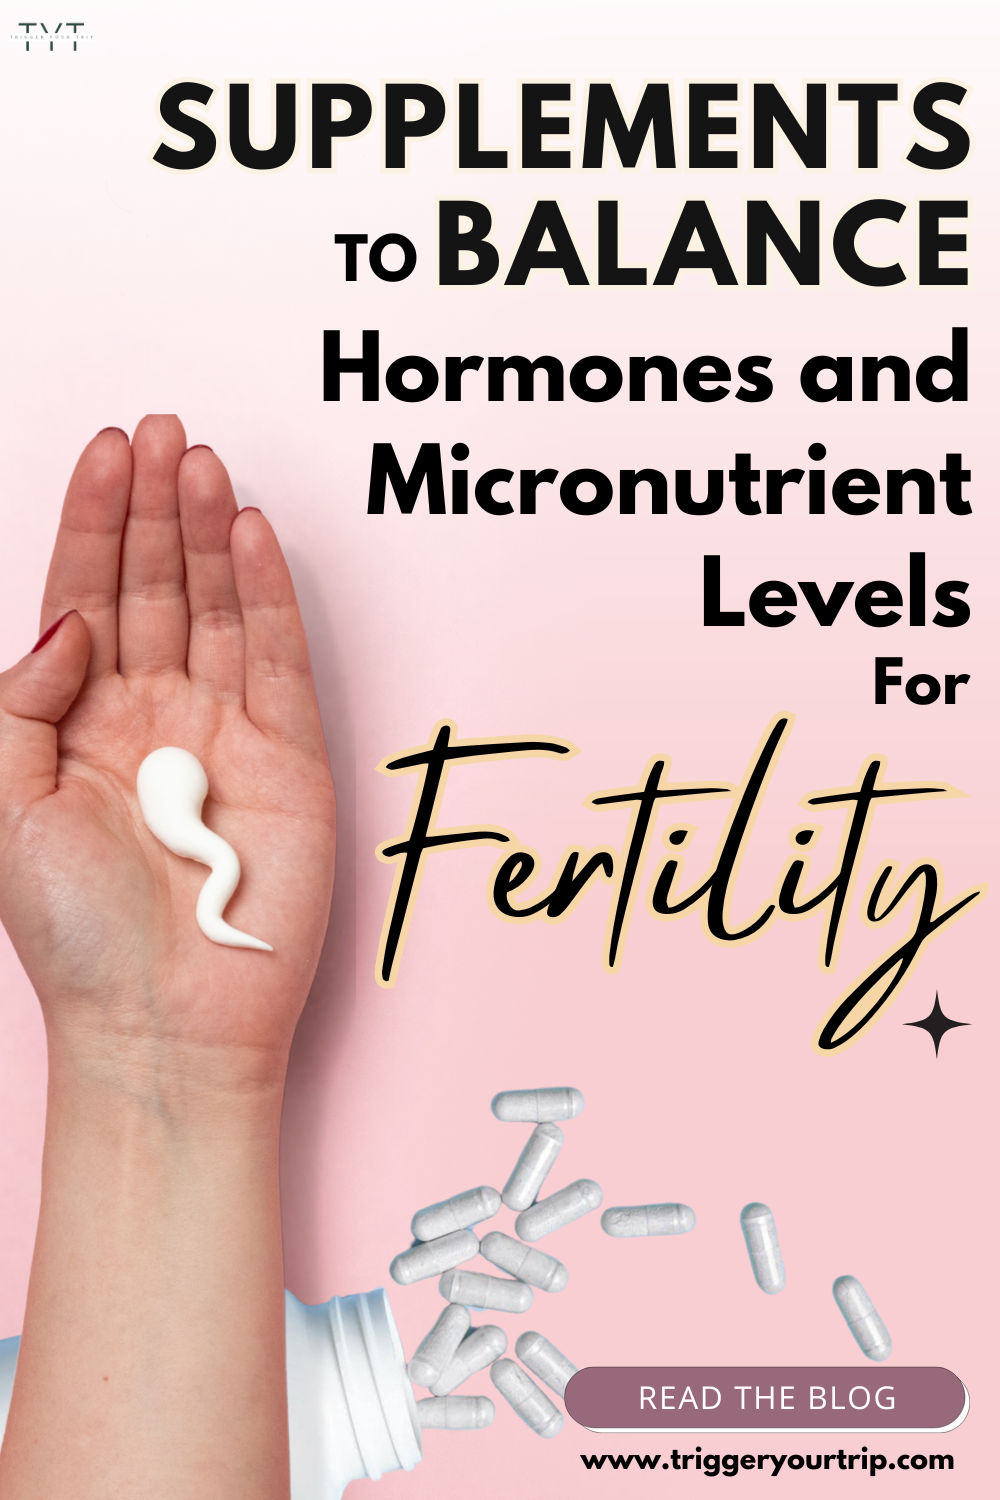 prenatal multivitamins for female reproductive health 